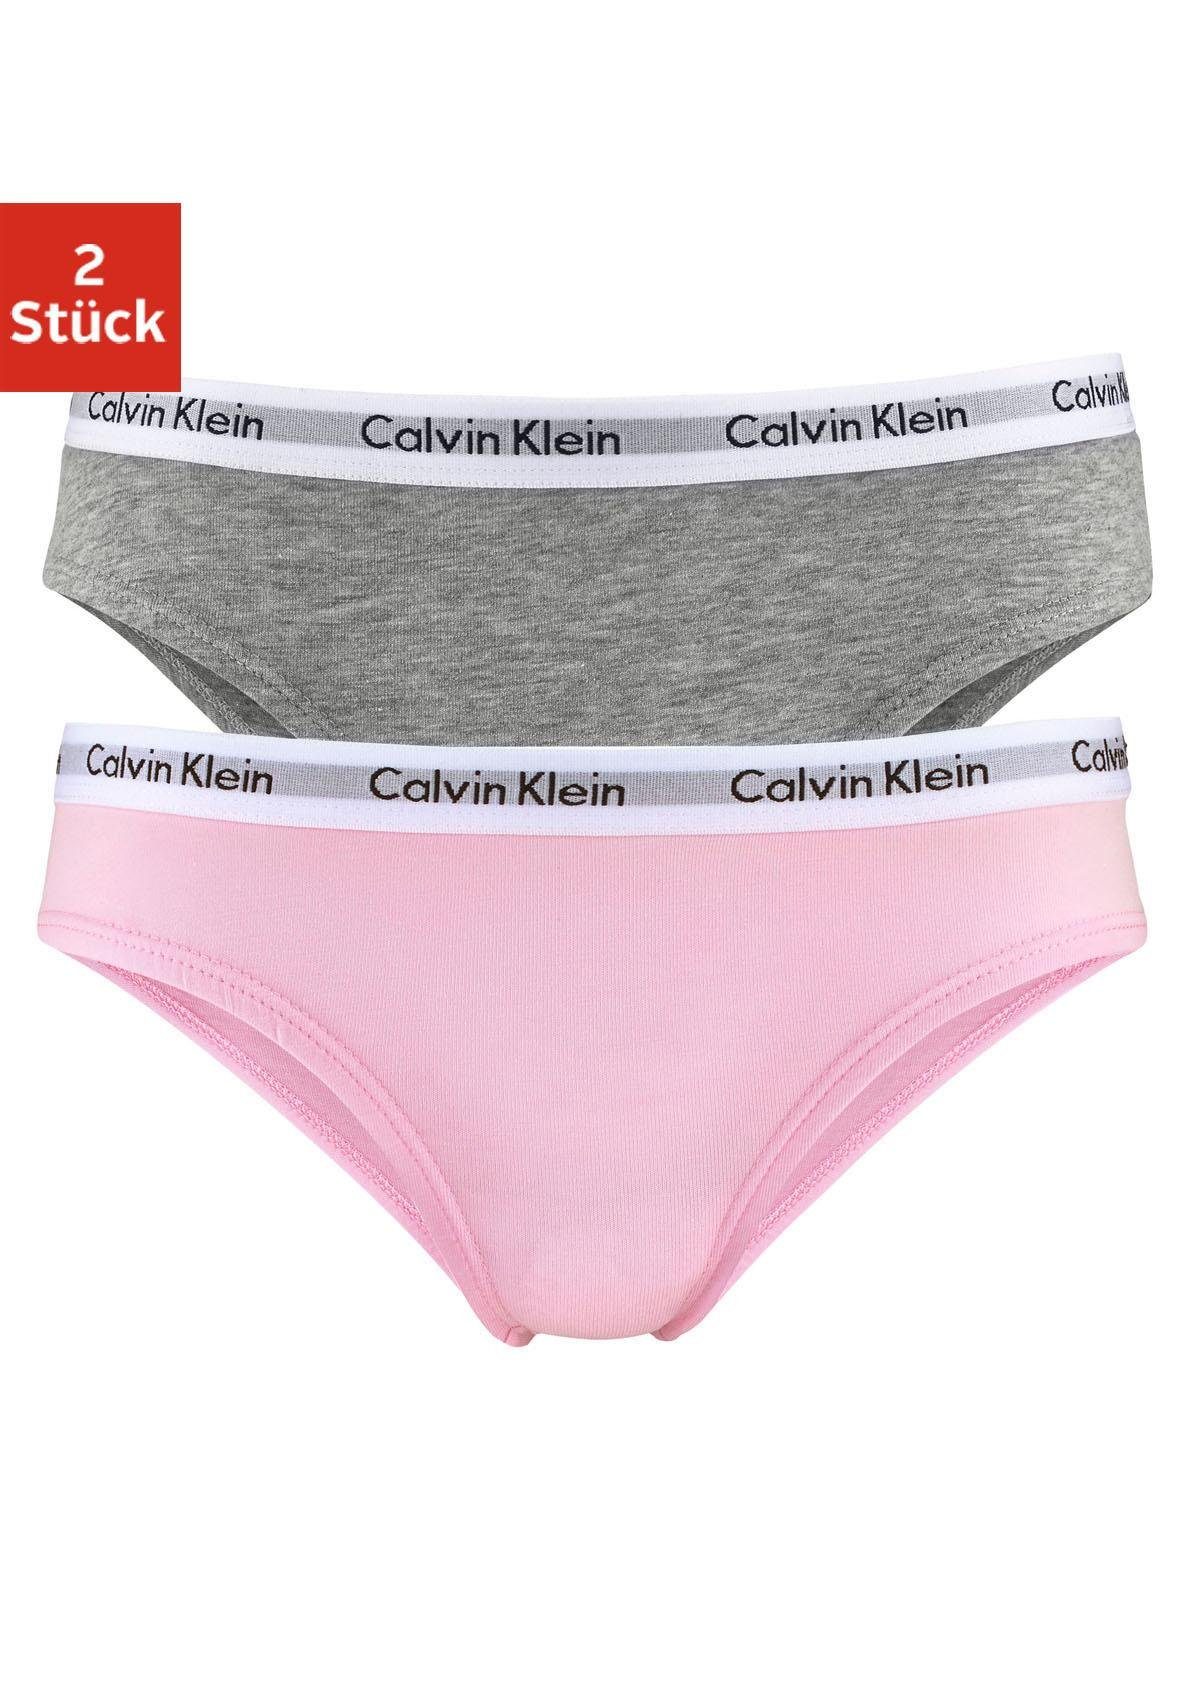 Calvin Klein Mädchenunterwäsche online kaufen | OTTO